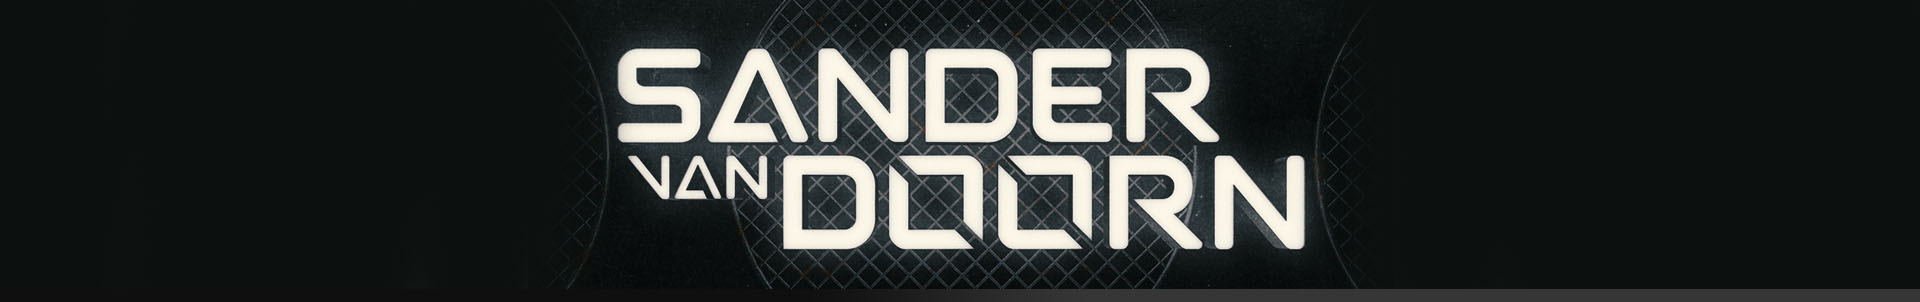 SPINNIN' RECORDS X SPLICE: SANDER VAN DOORN - THE ULTIMATE SAMPLE COLLECTION!